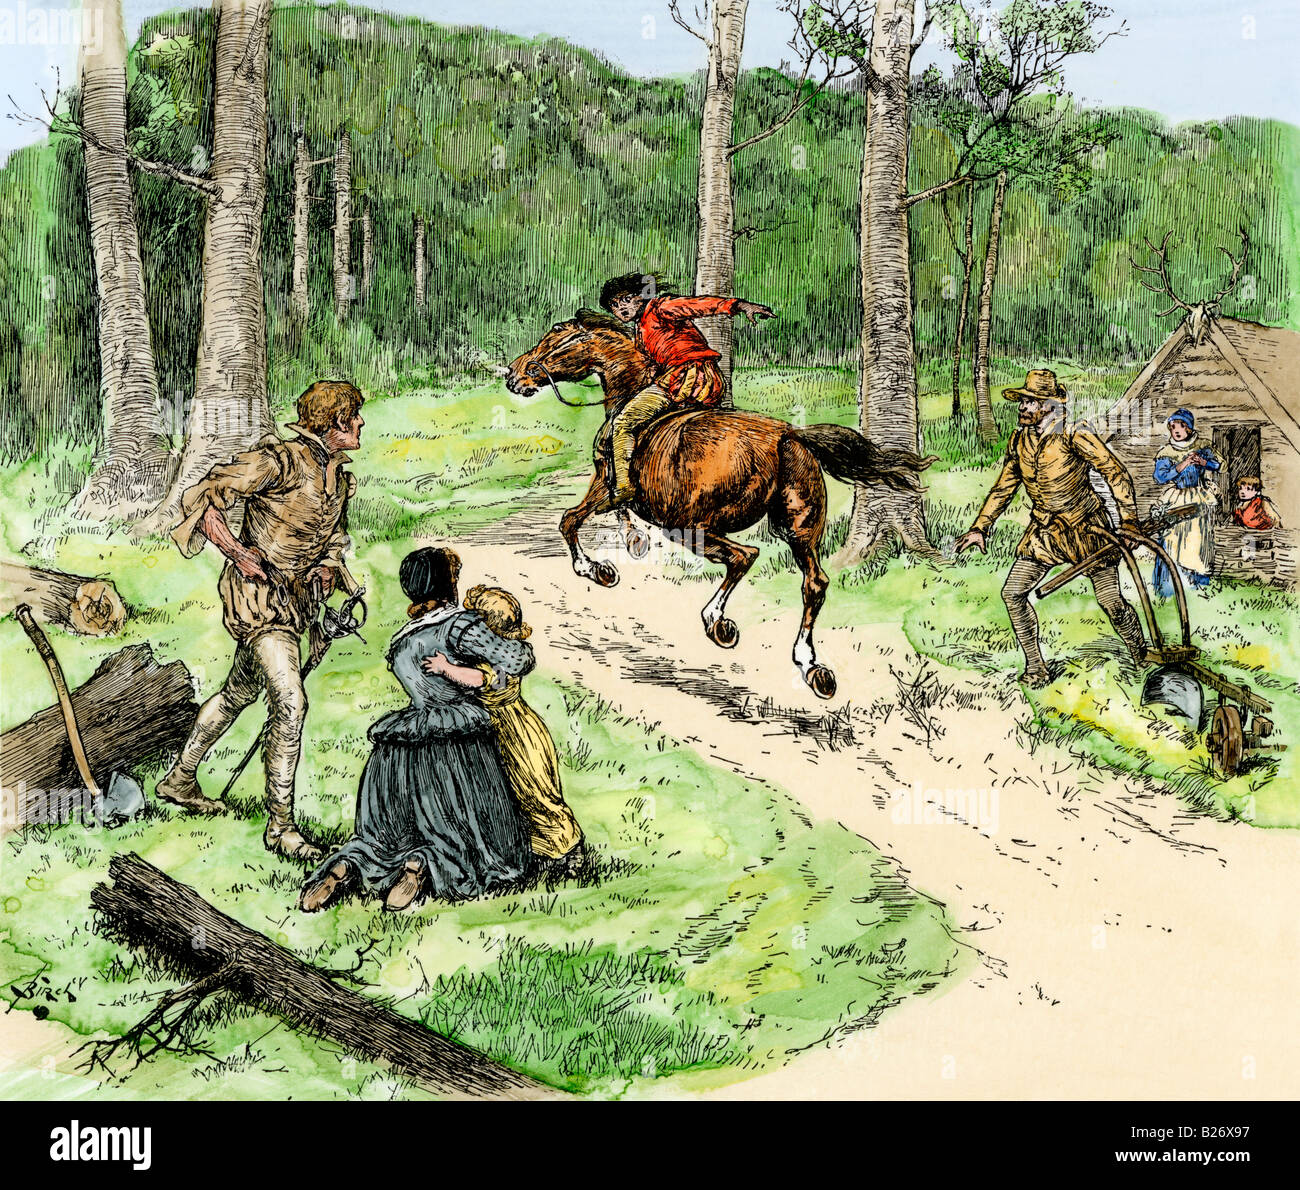 Messenger avertissement d'une attaque des Américains indigènes de la colonie de Roanoke fin des années 1500. À la main, gravure sur bois Banque D'Images